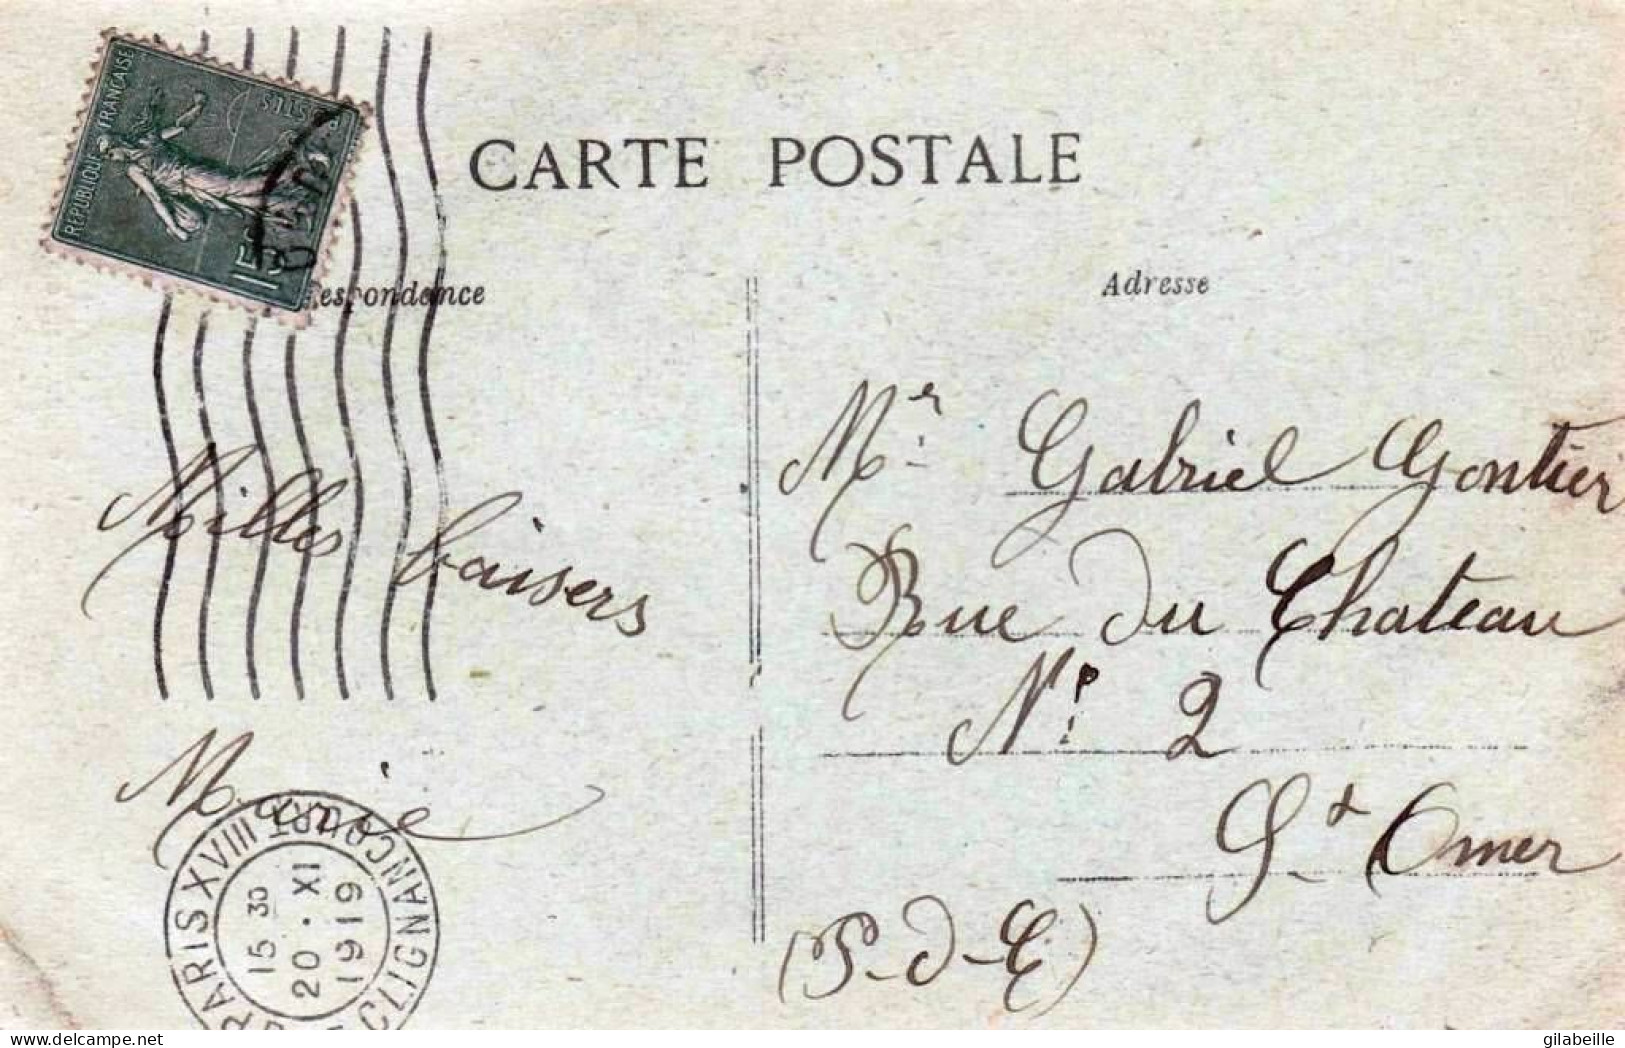 75 - PARIS 18 -  La Sirene De Montmartre - Souvenir De 1918 - Arrondissement: 18